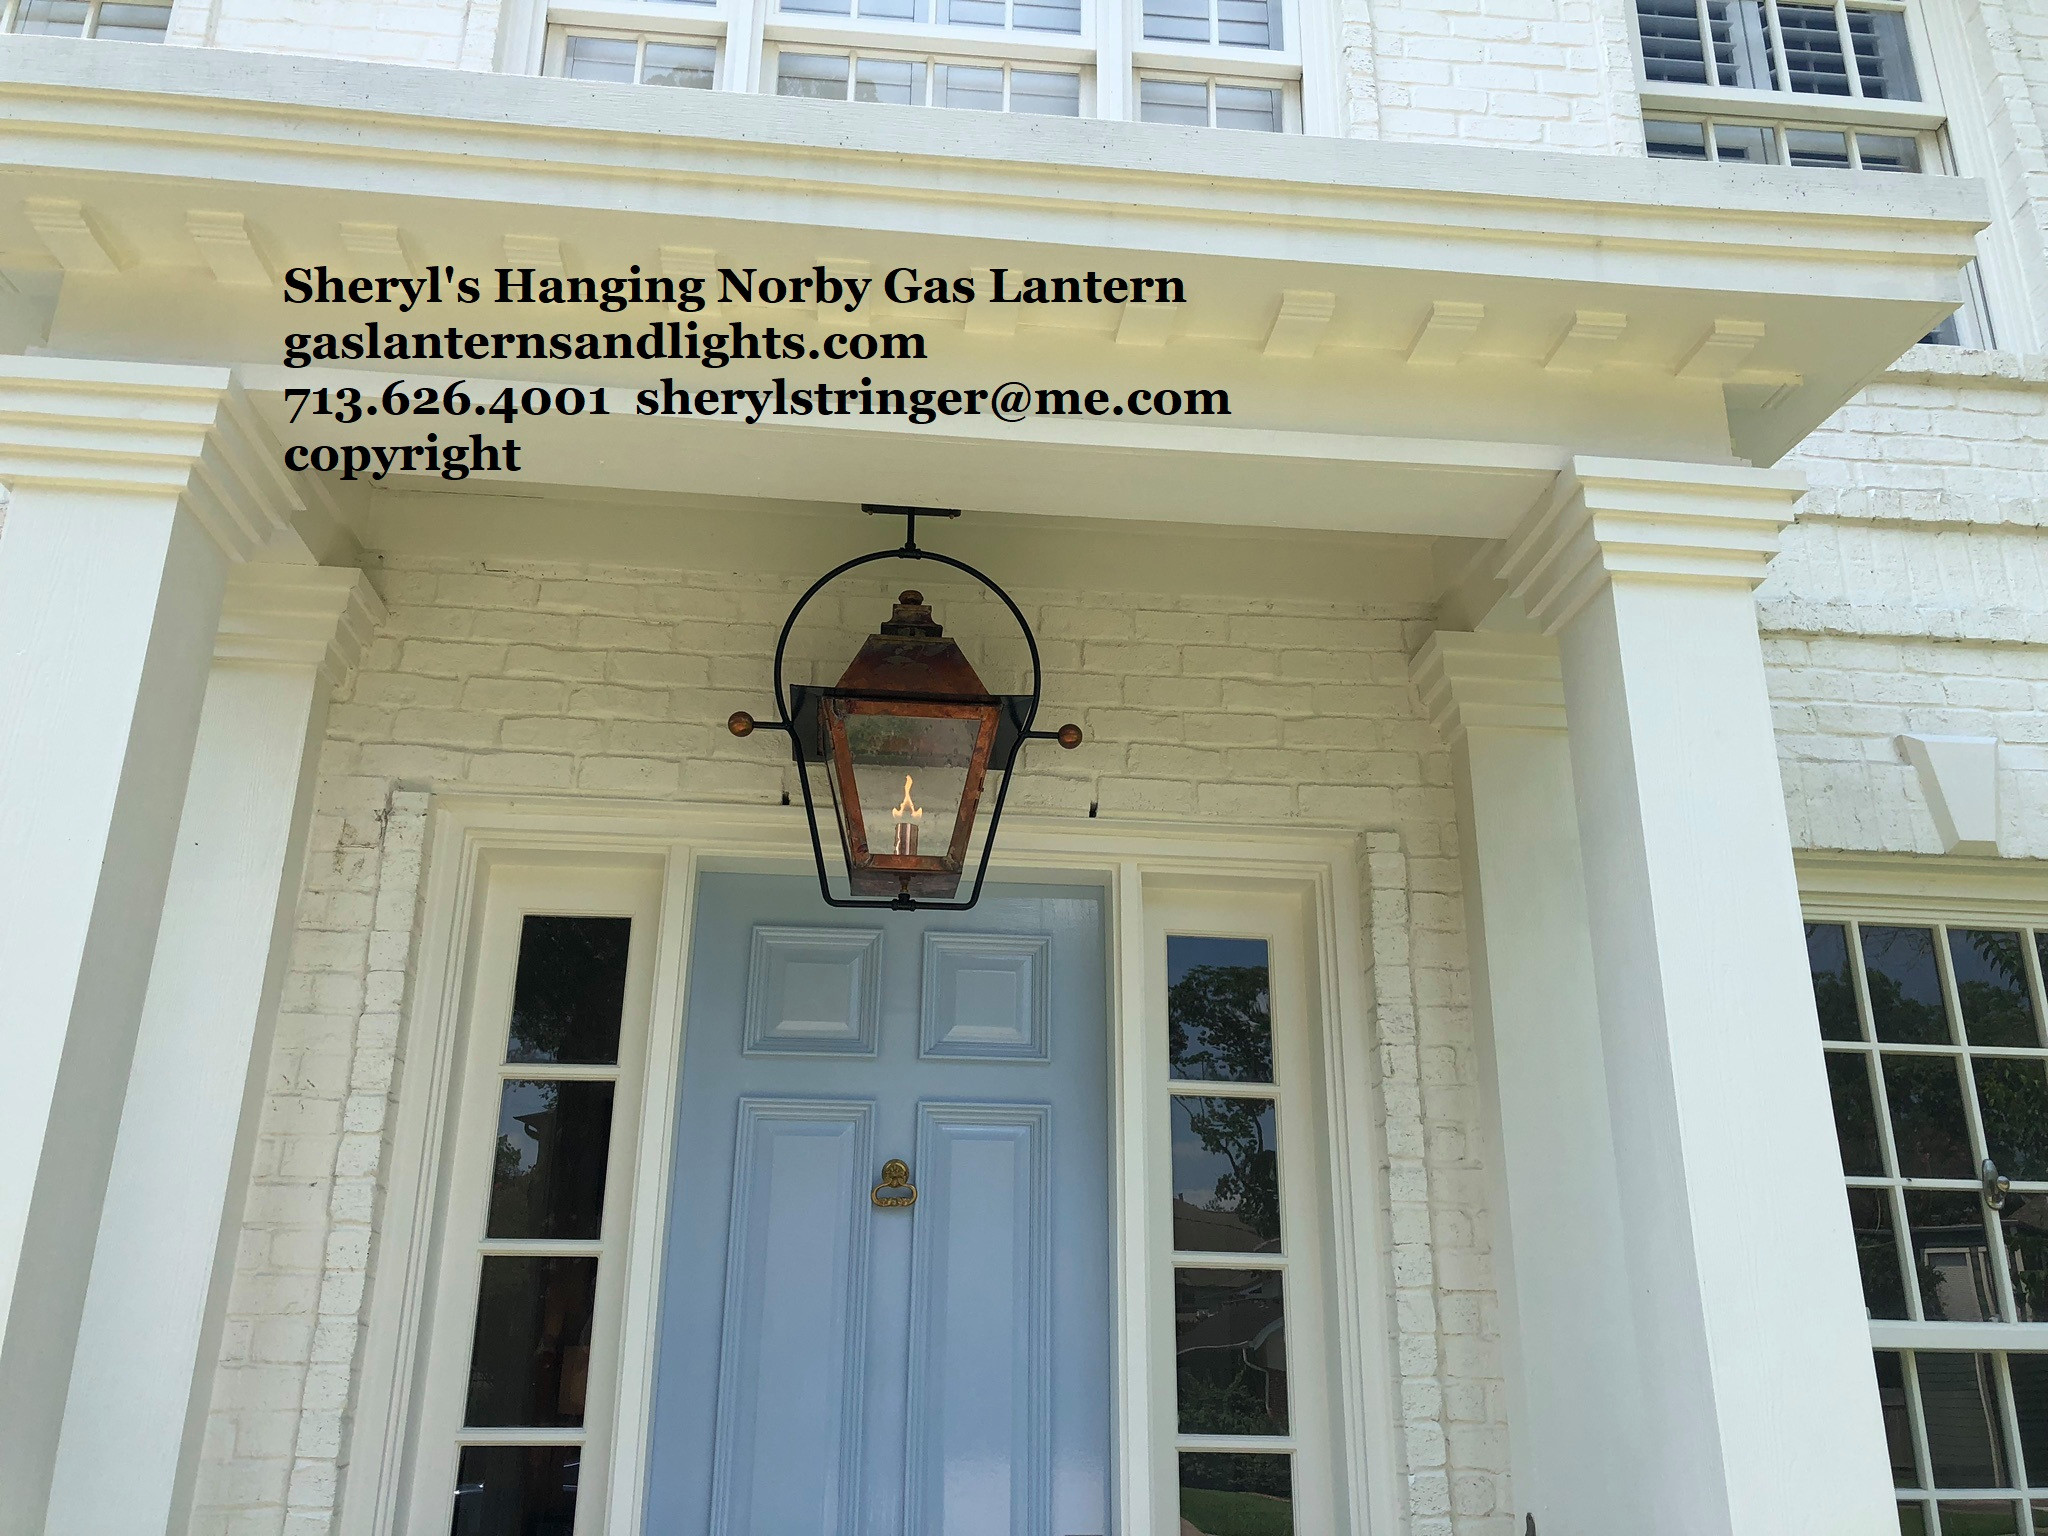 Sheryl's Hanging Gas Lanterns